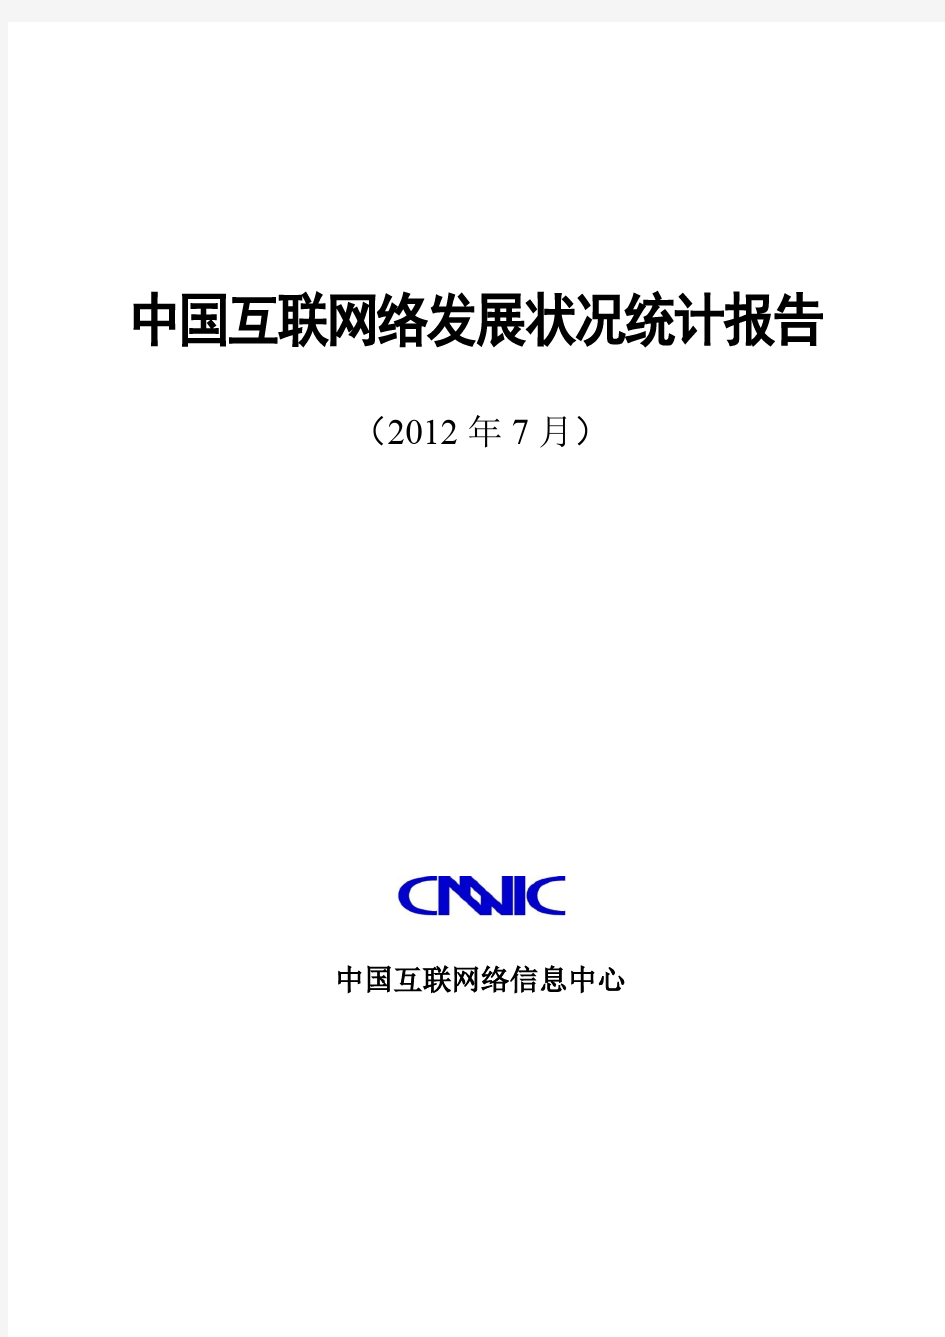 第30次中国互联网络发展状况调查统计报告